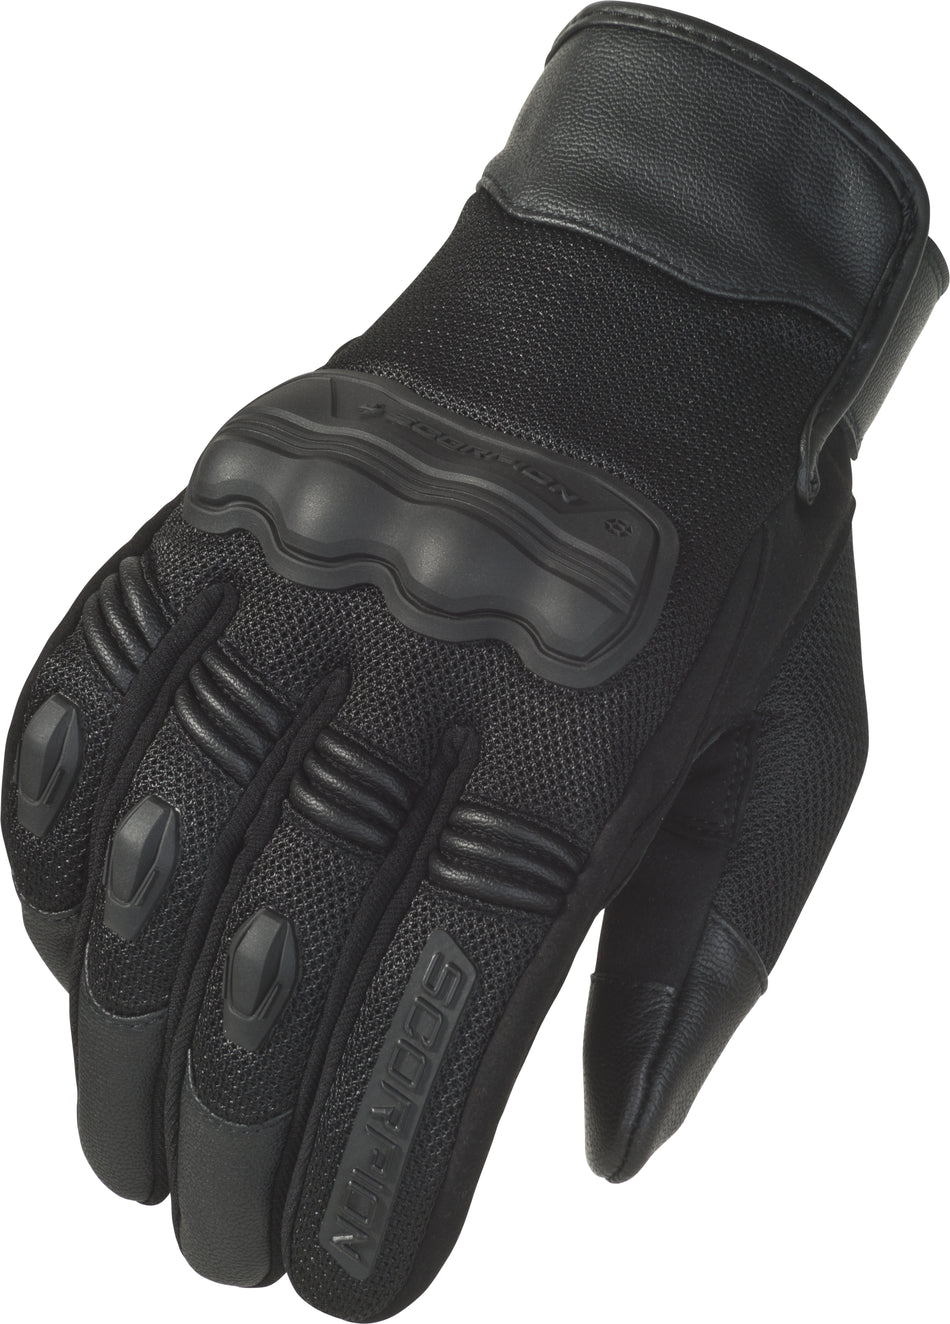 SCORPION EXO Divergent Gloves Black Lg G33-035